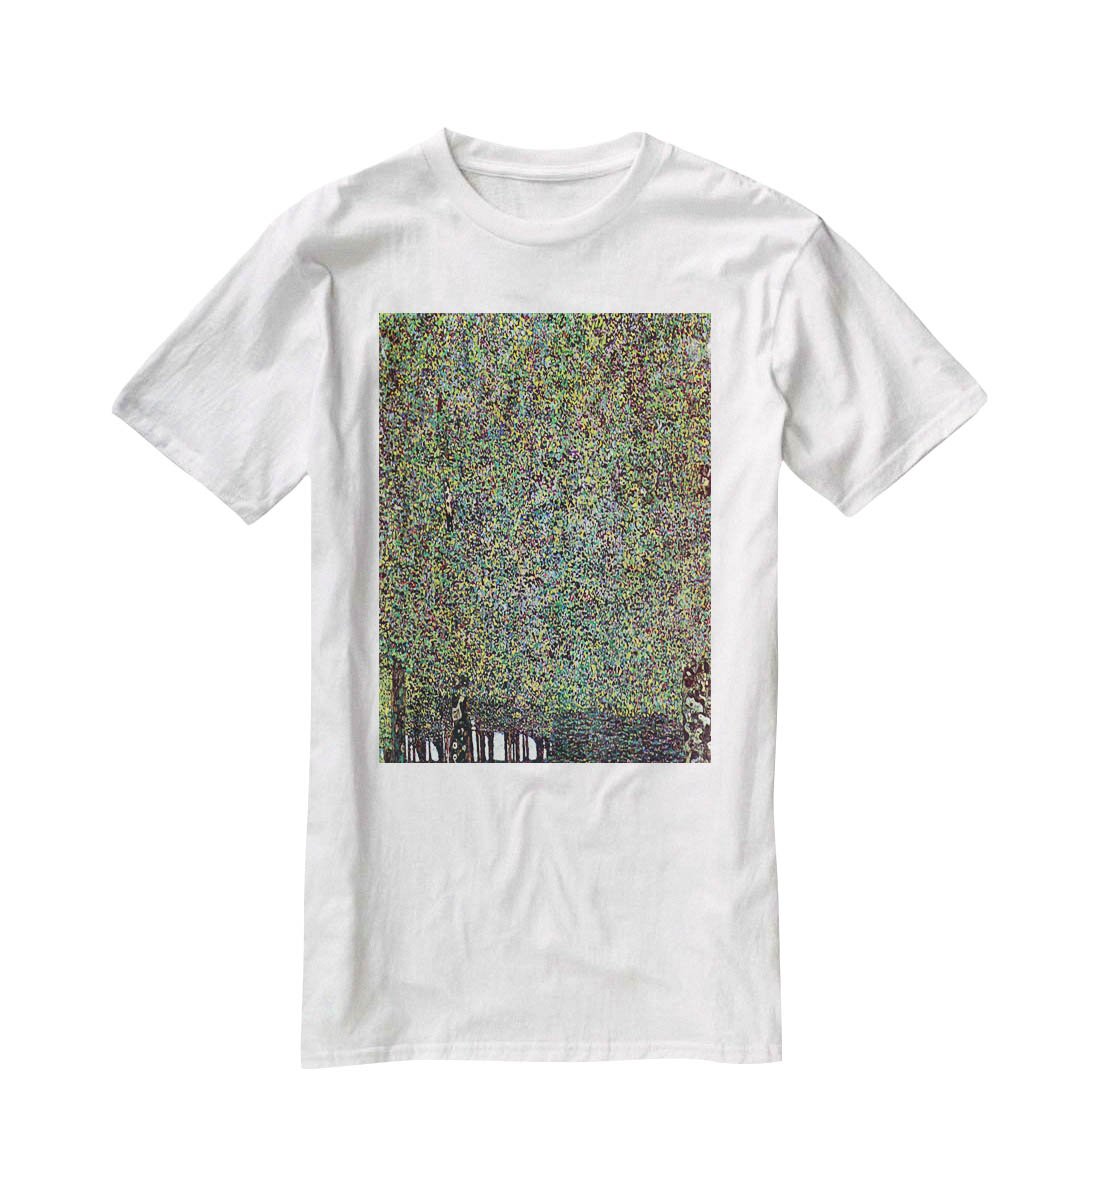 The Park by Klimt T-Shirt - Canvas Art Rocks - 5